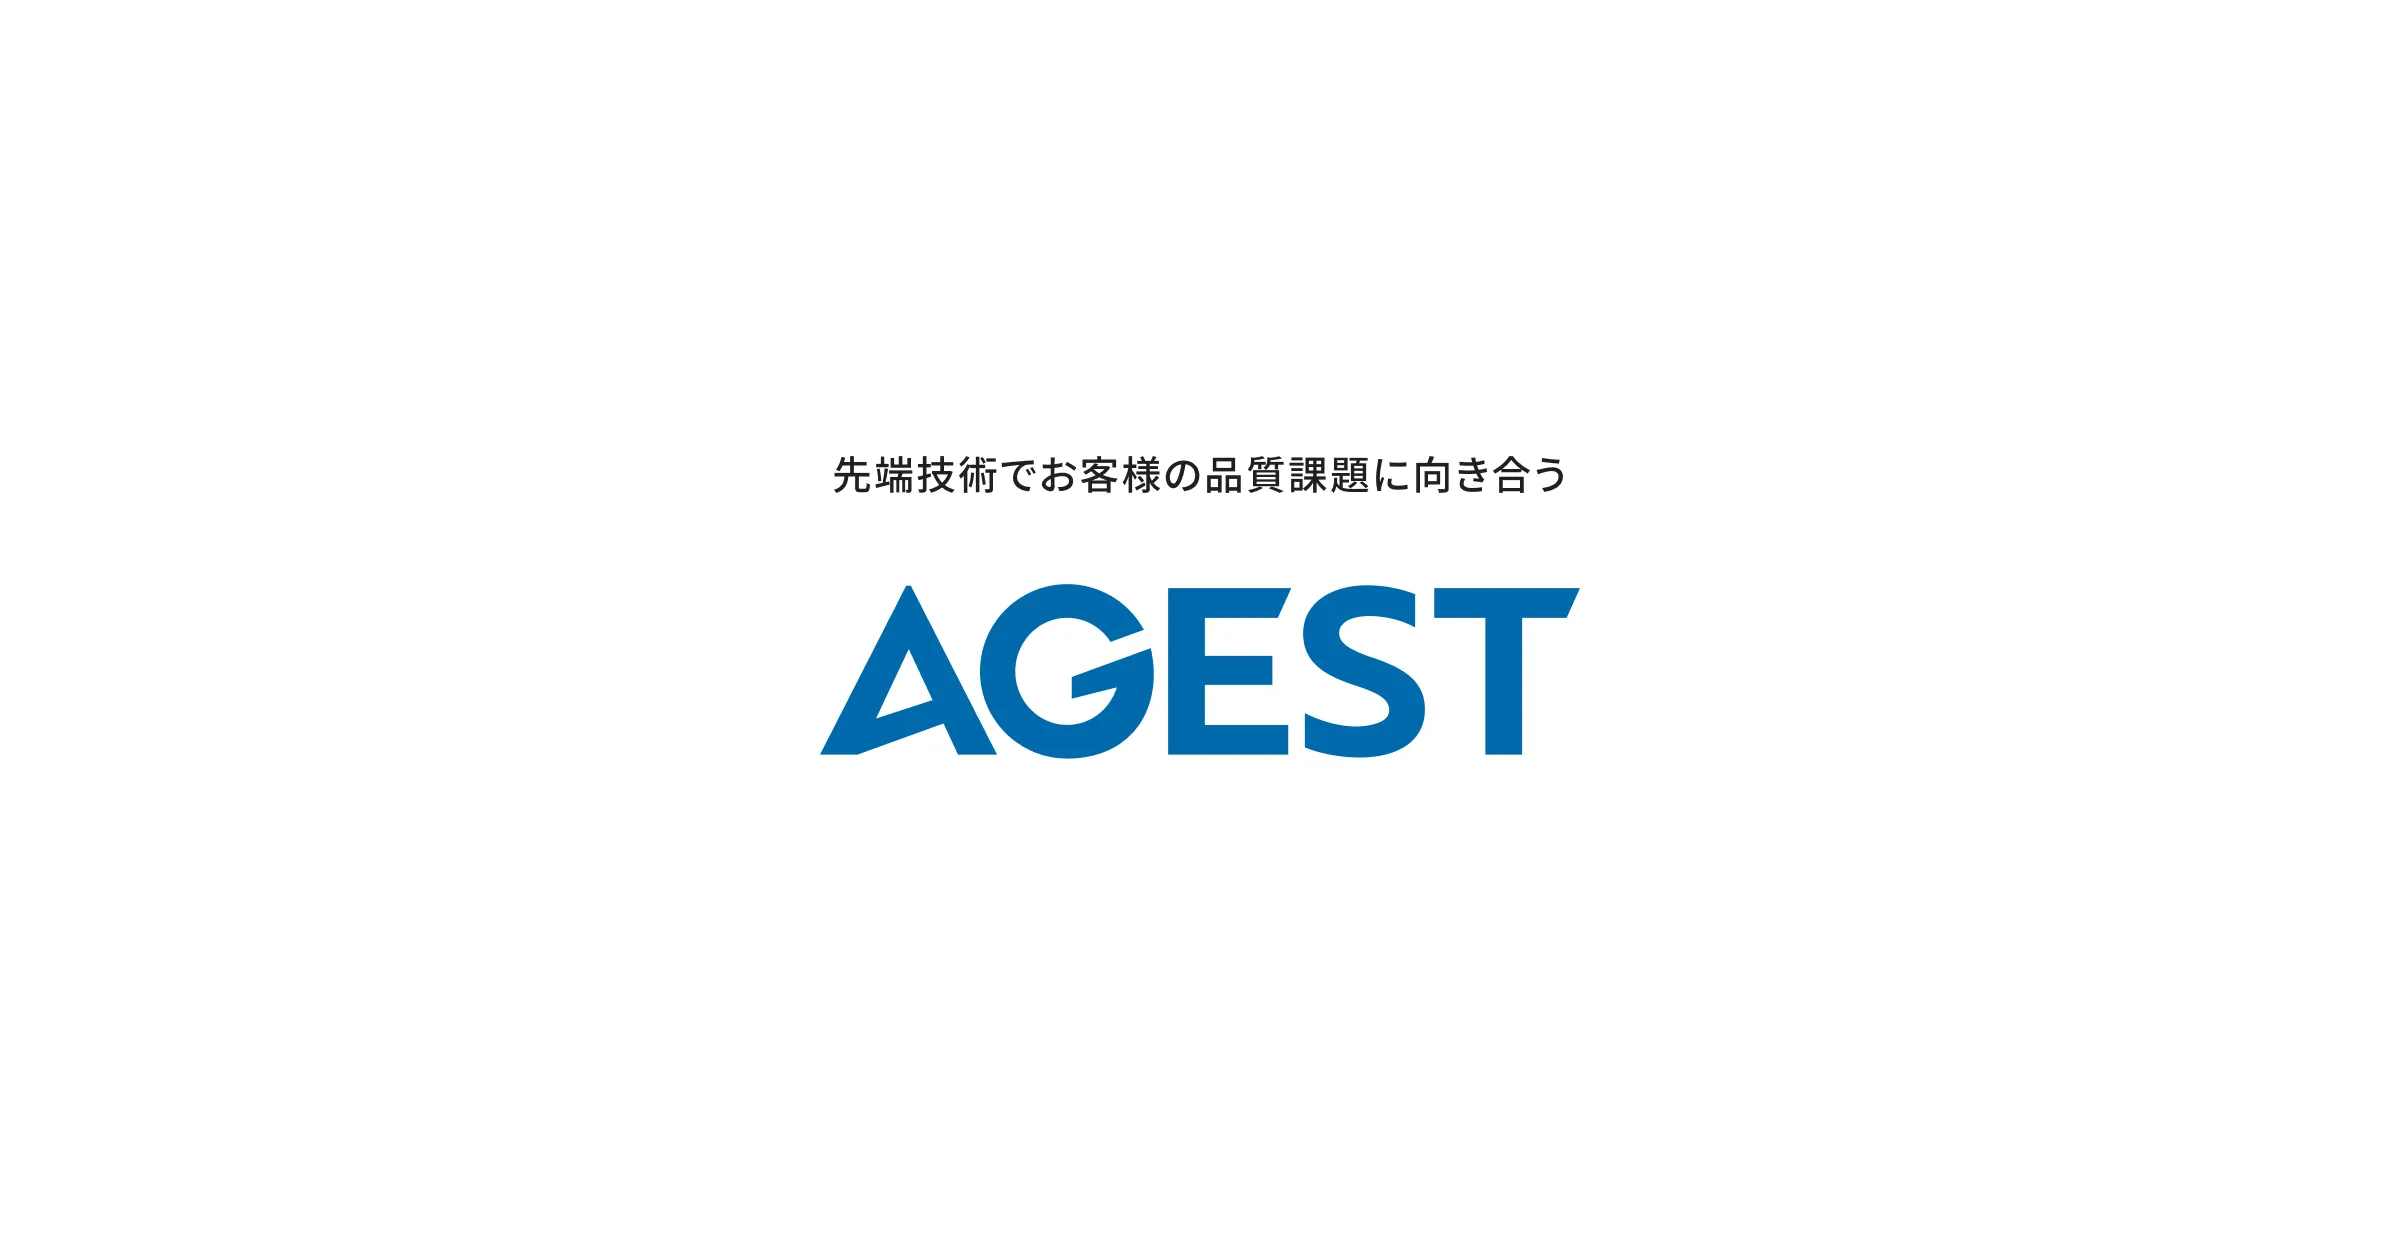 AGEST、ジャパニアスとエンジニアリング技術・リソースの相互支援などの広範囲な事業提携契約を締結 | 株式会社AGEST（アジェスト）